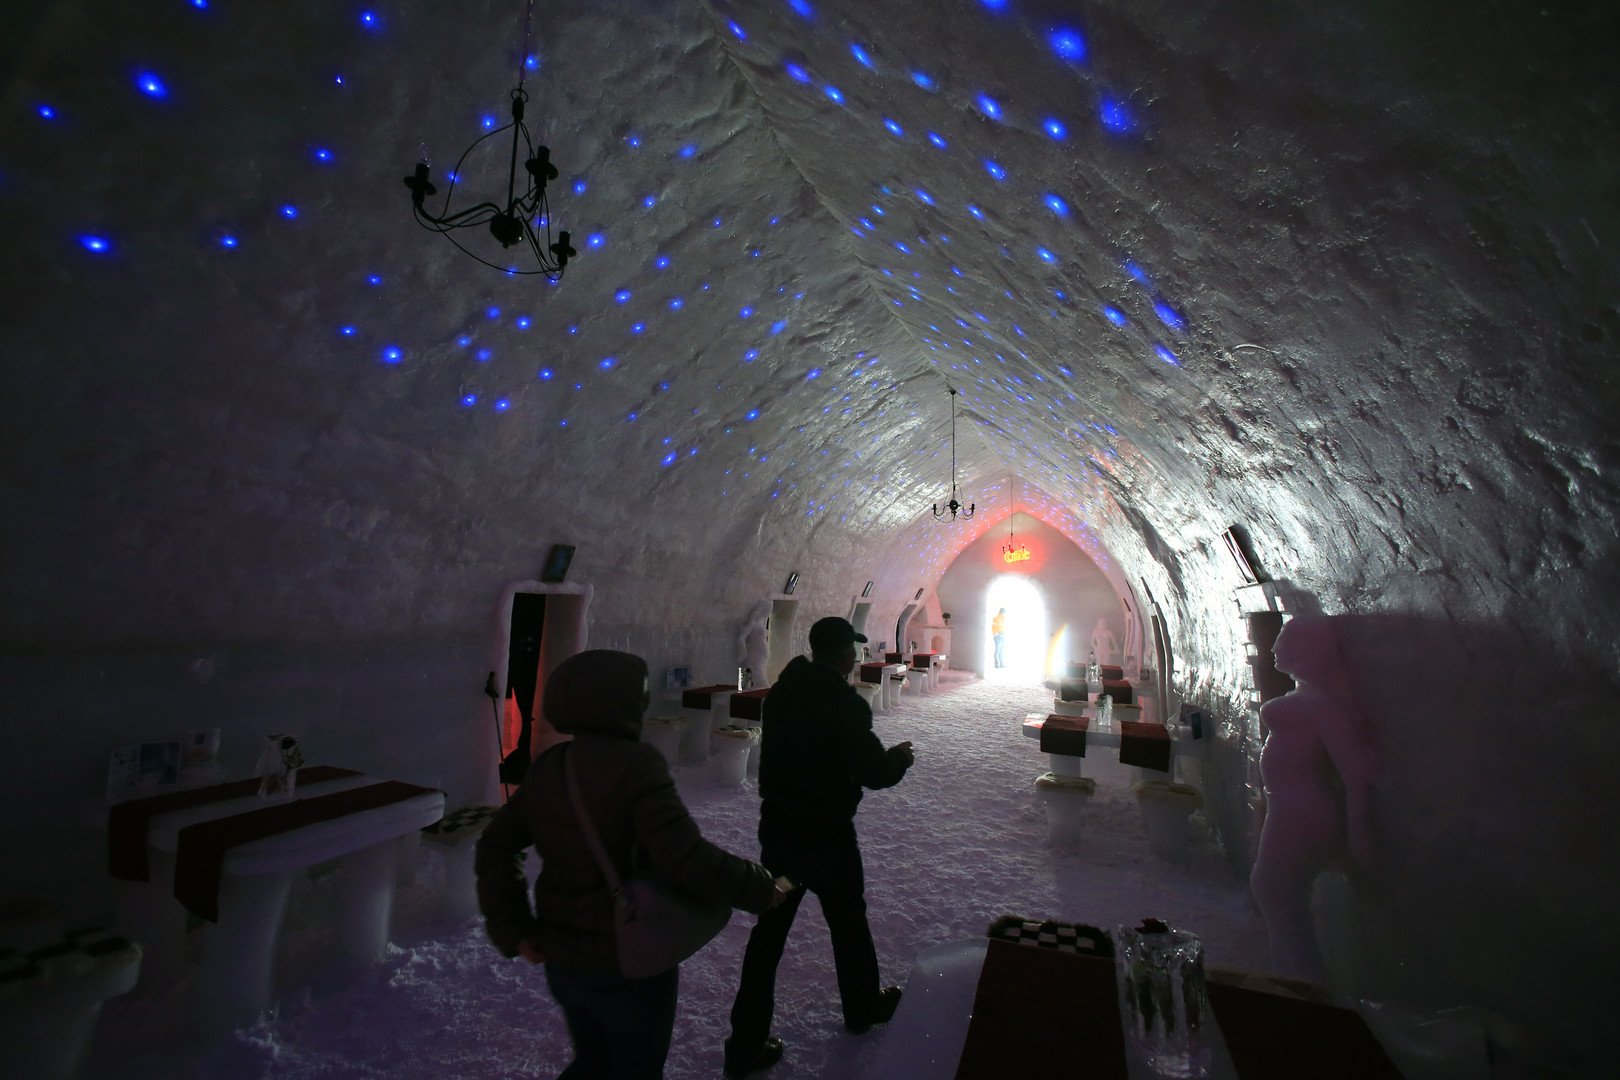 زوار منتجع باليا لاك داخل كنيسة الجليد على جبال فاراغاس، رومانيا، 29 يناير/كانون الثاني 2015 